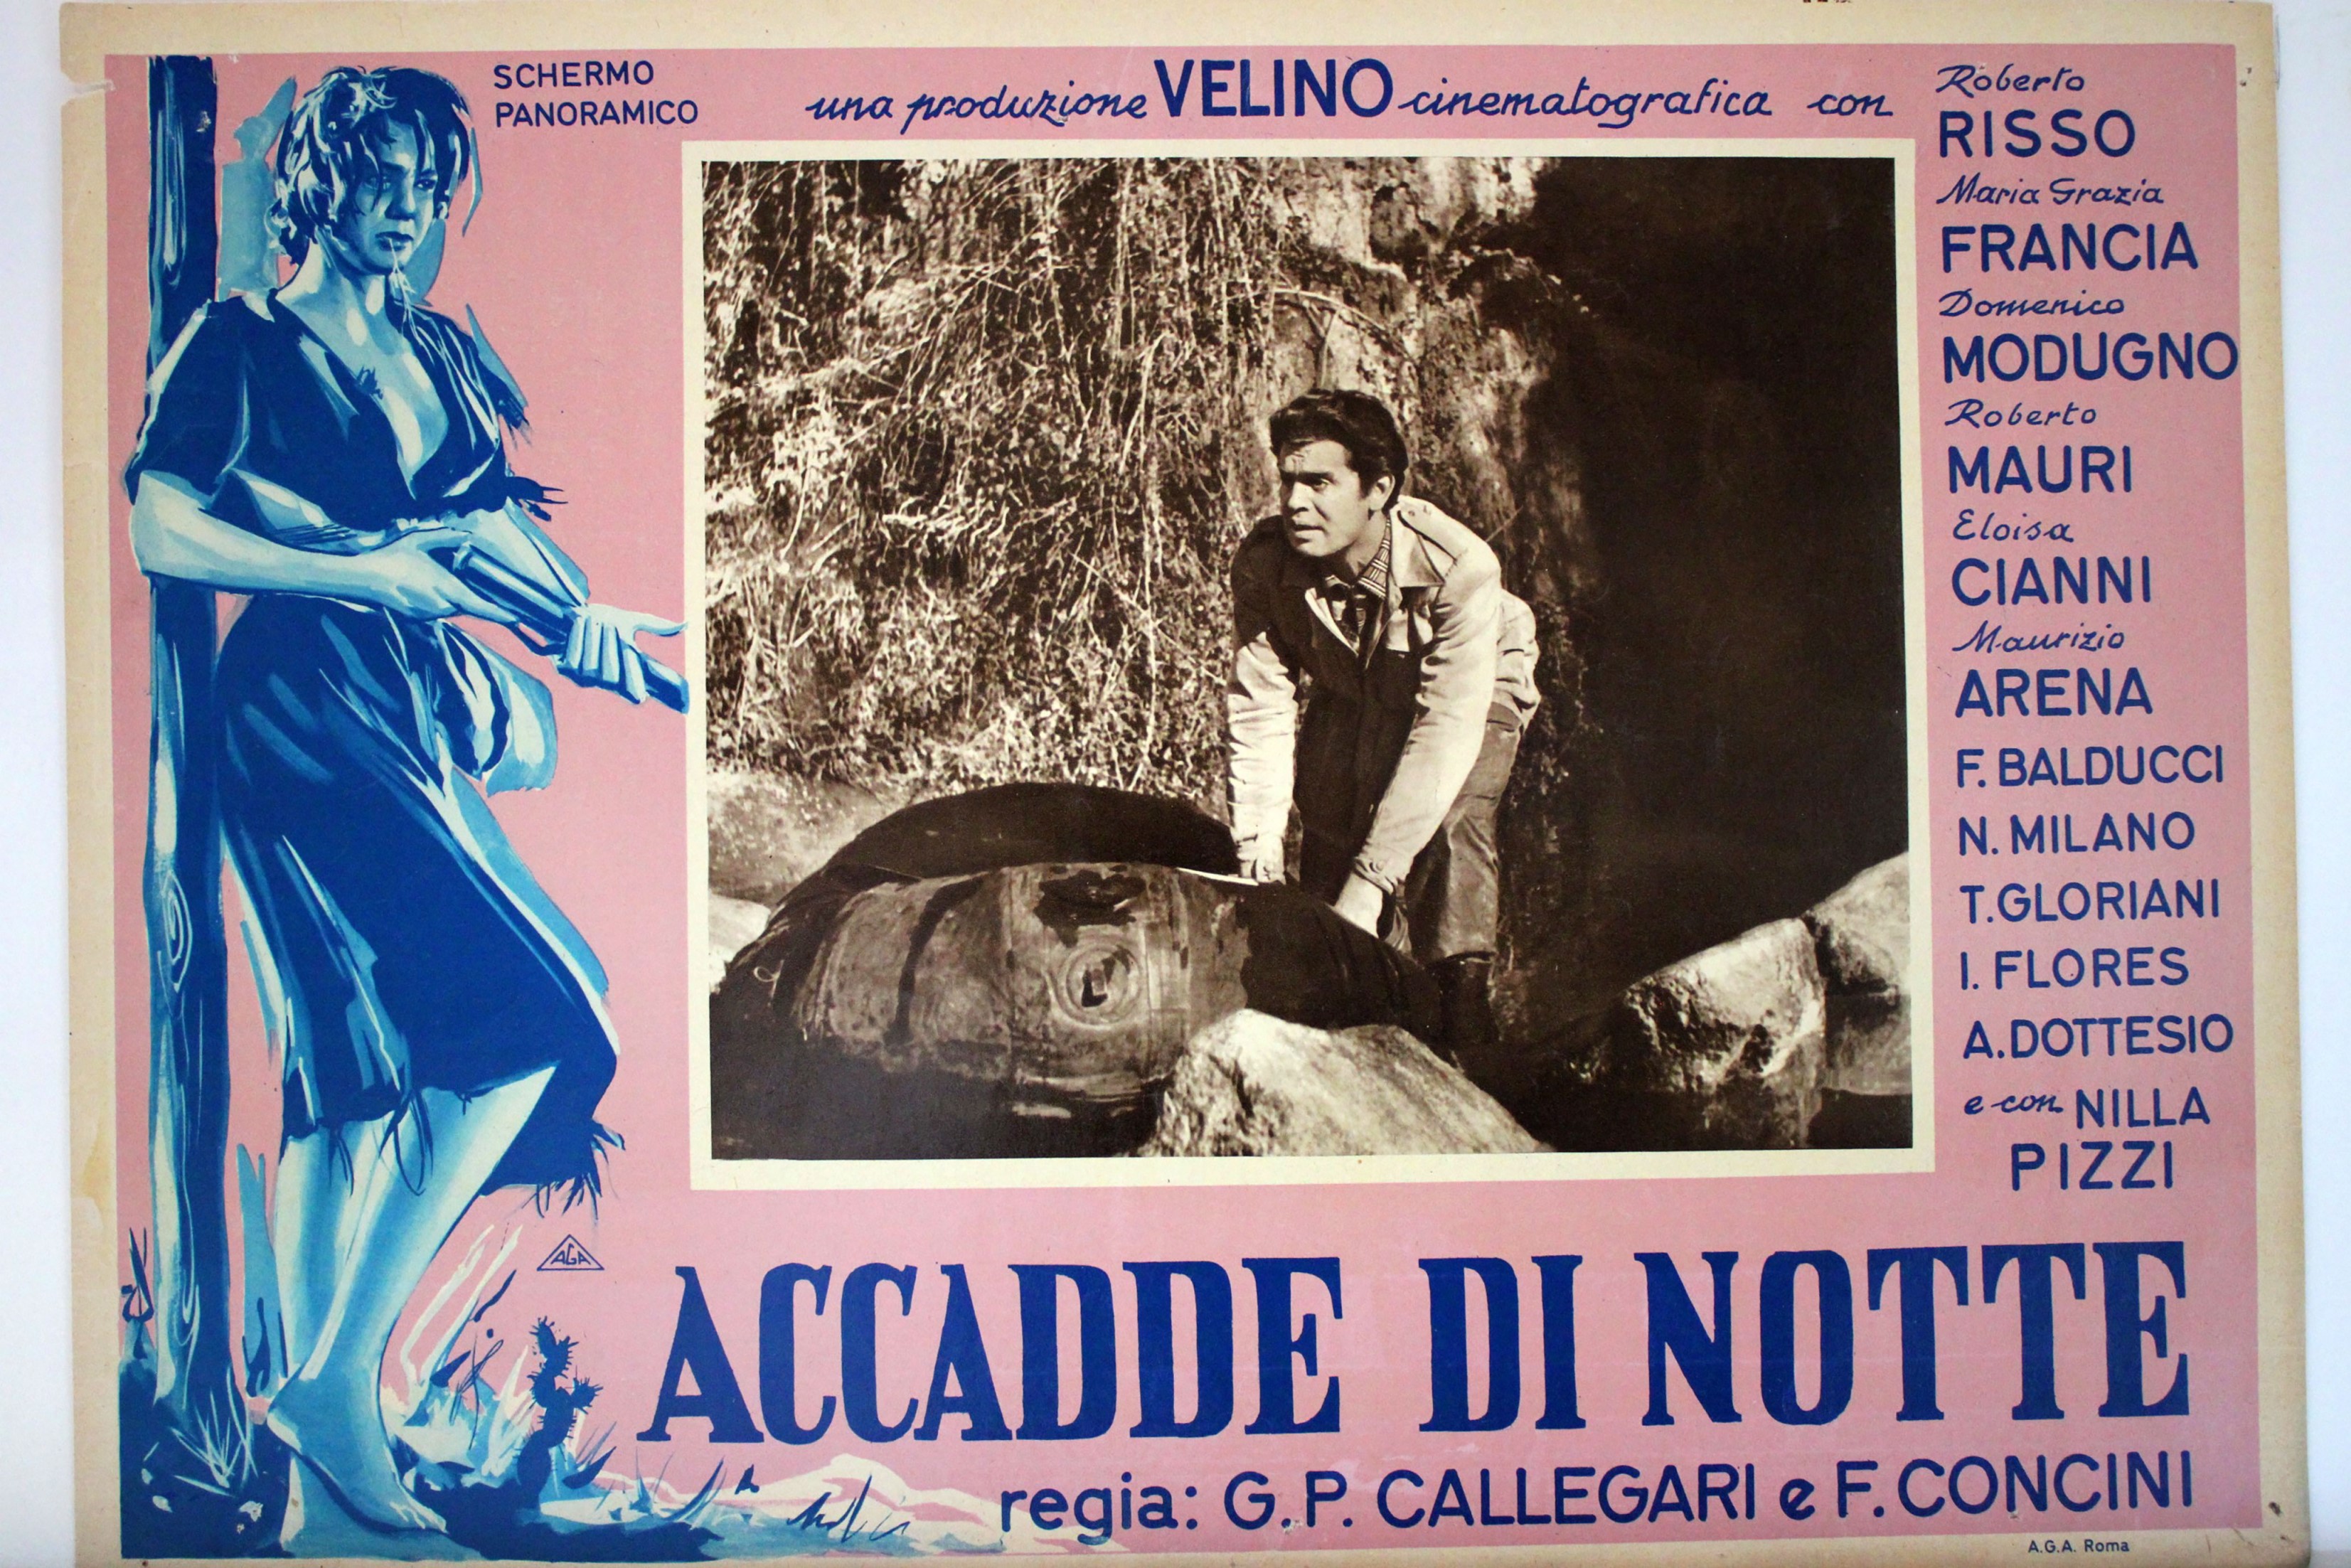 155313 Accadde di notte (1956) Tina Gloriani 2.jpg